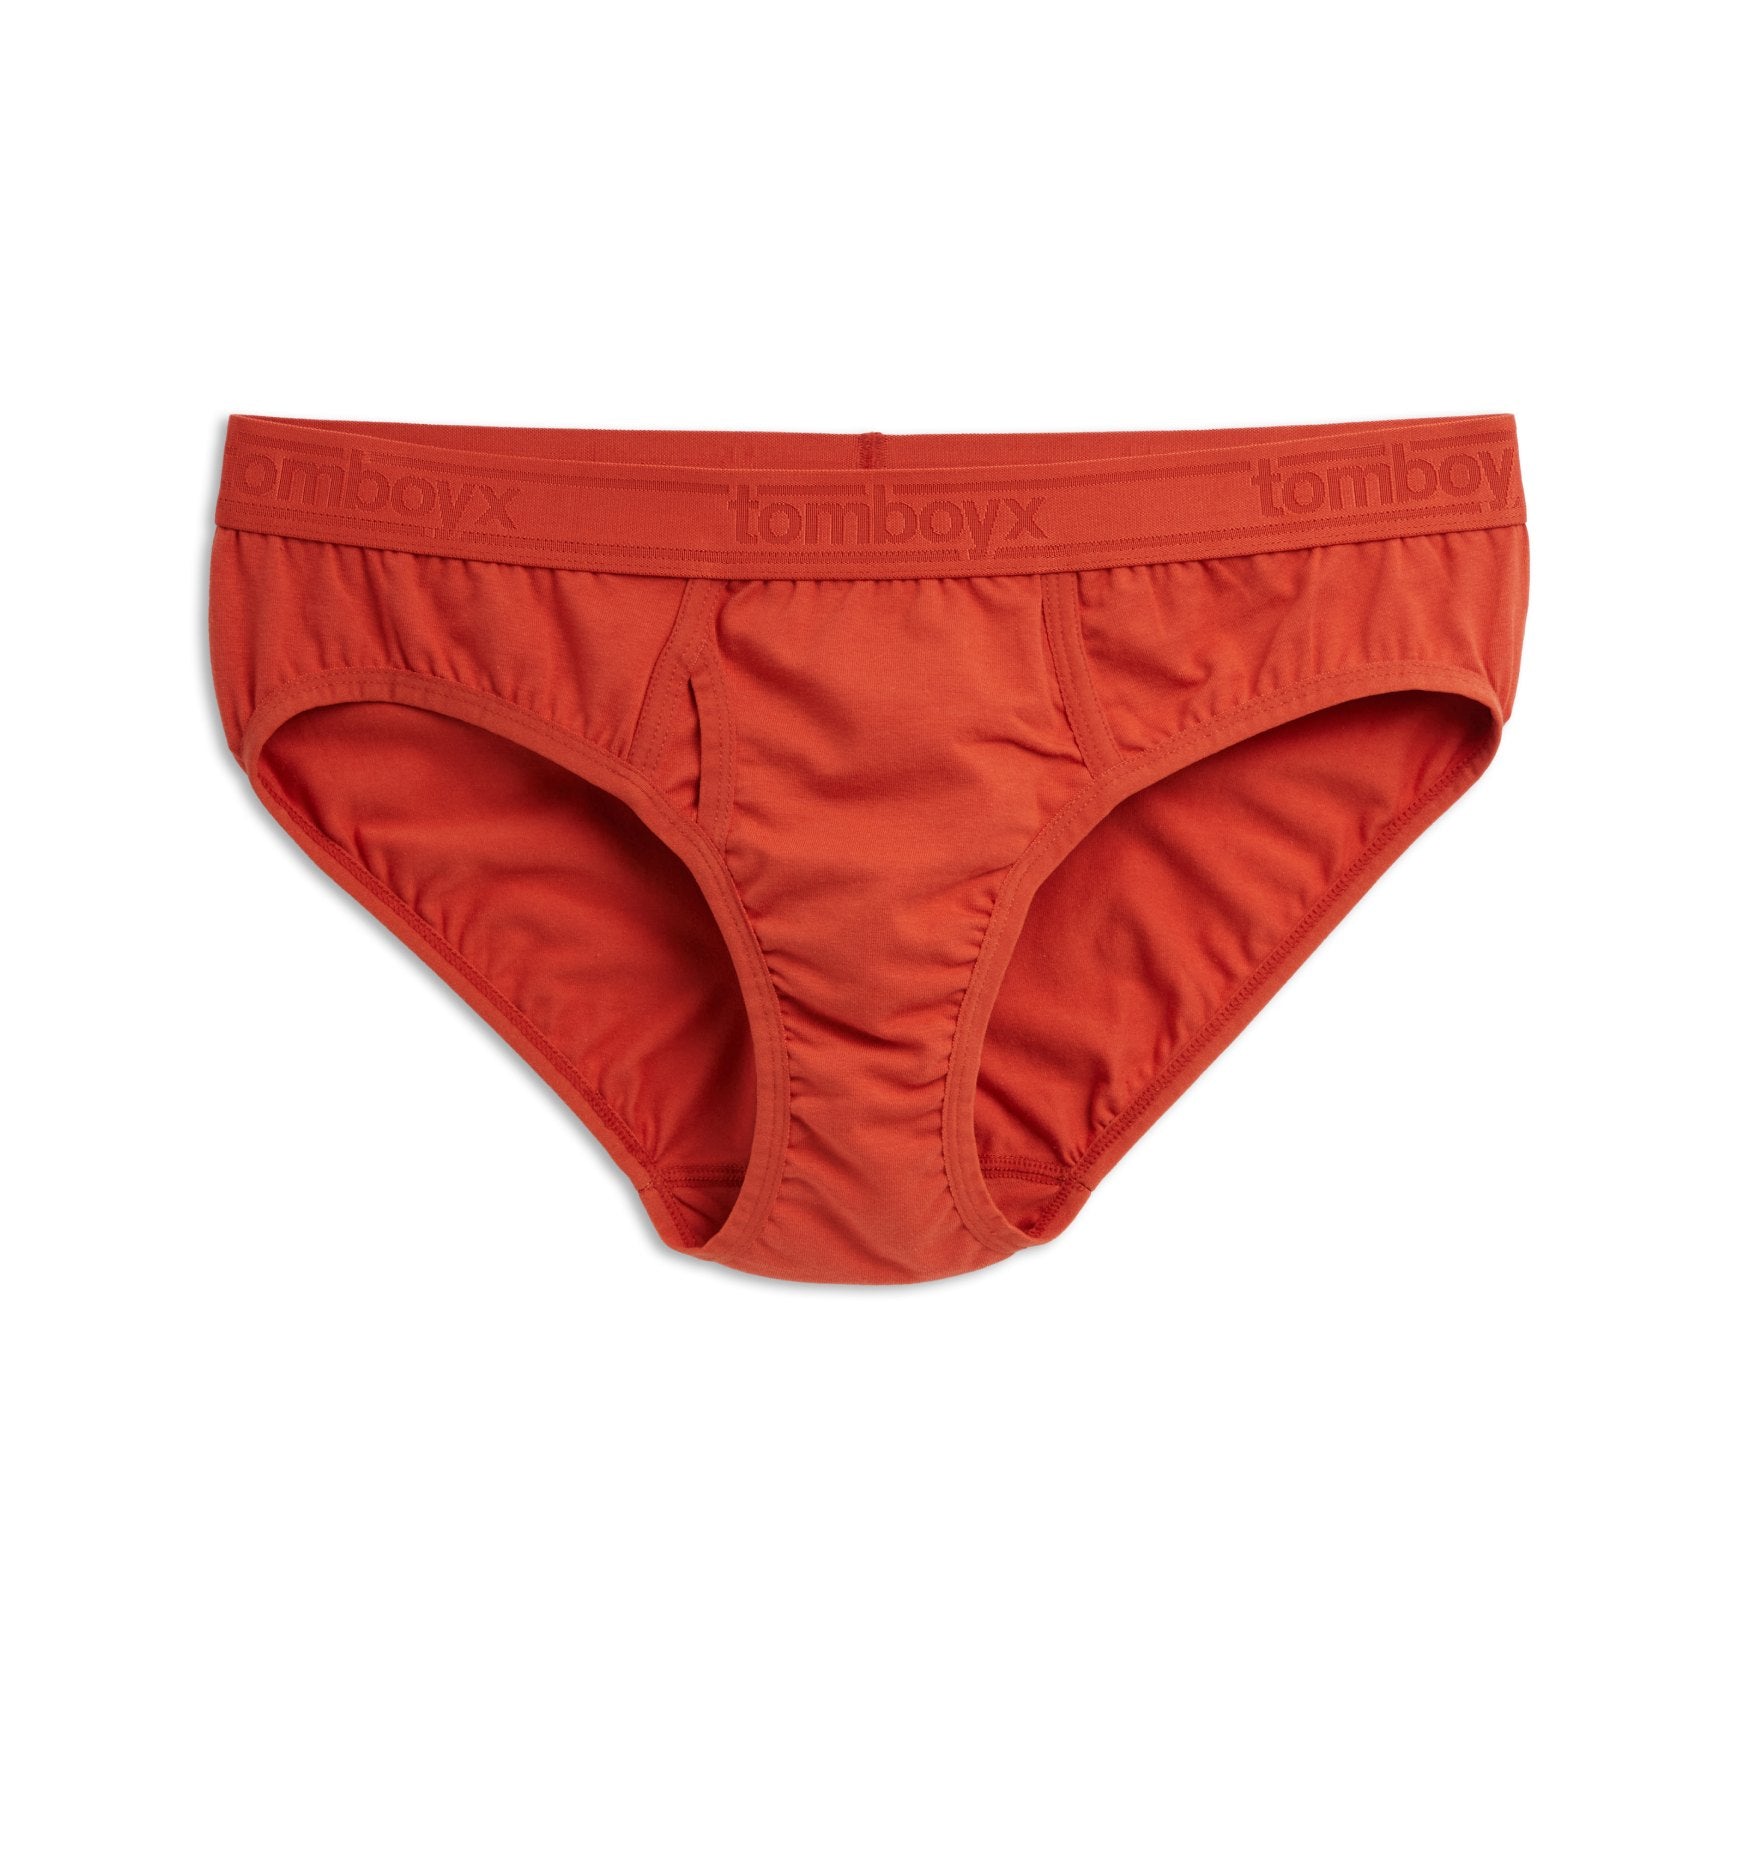 Aruba Swimwear, Sustainable Swimwear, Reversible Cheeky Bikini Bottom